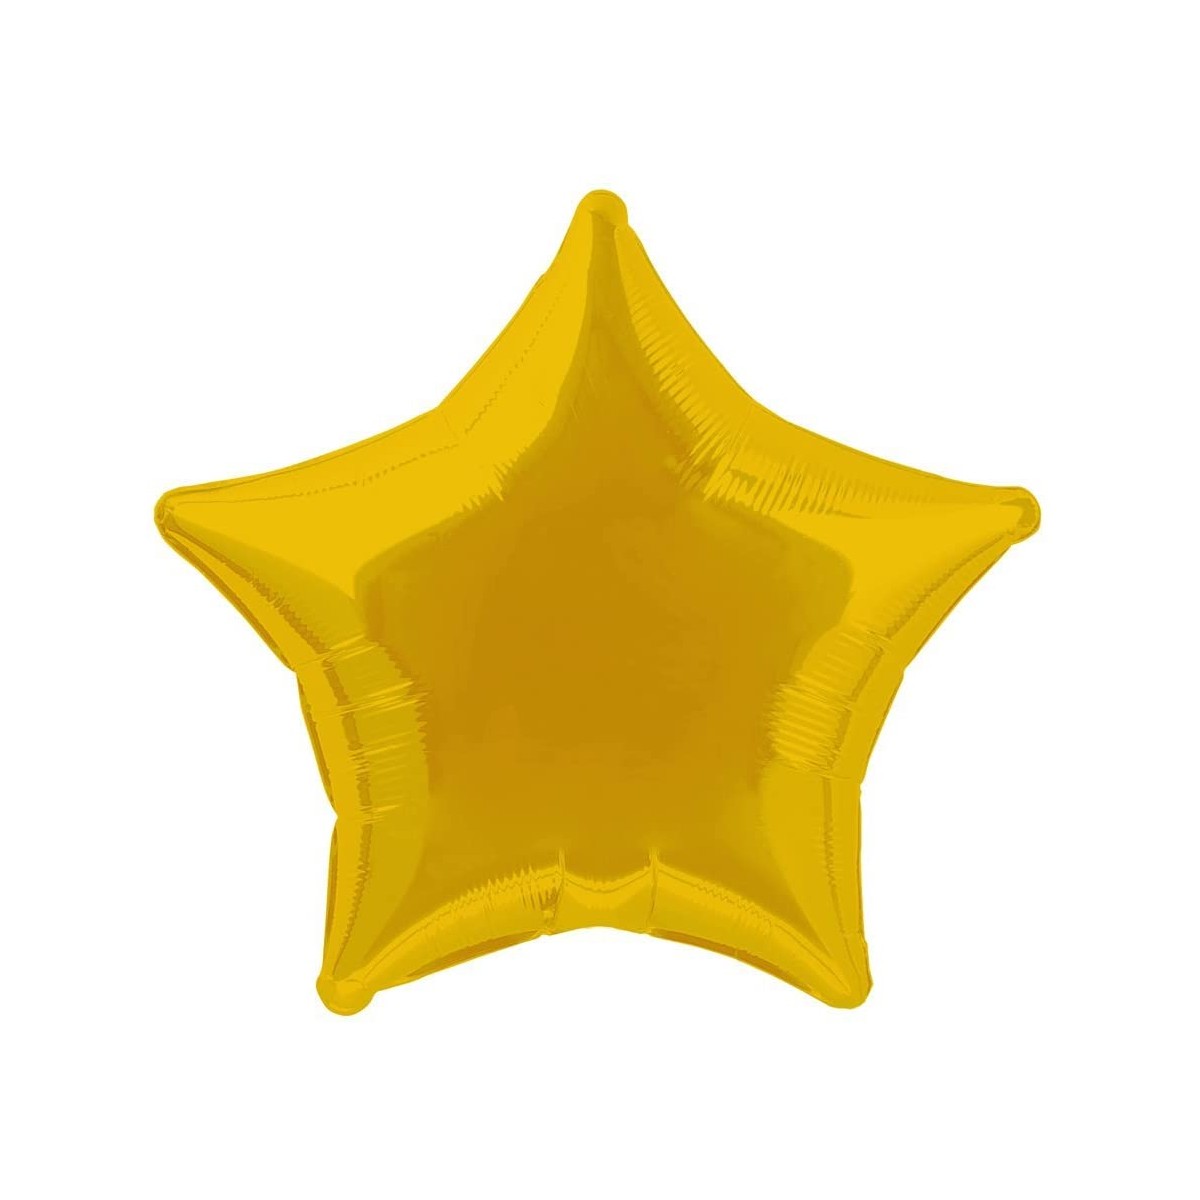 Palloncino stella oro da 50 cm, foil dorato, in lamina